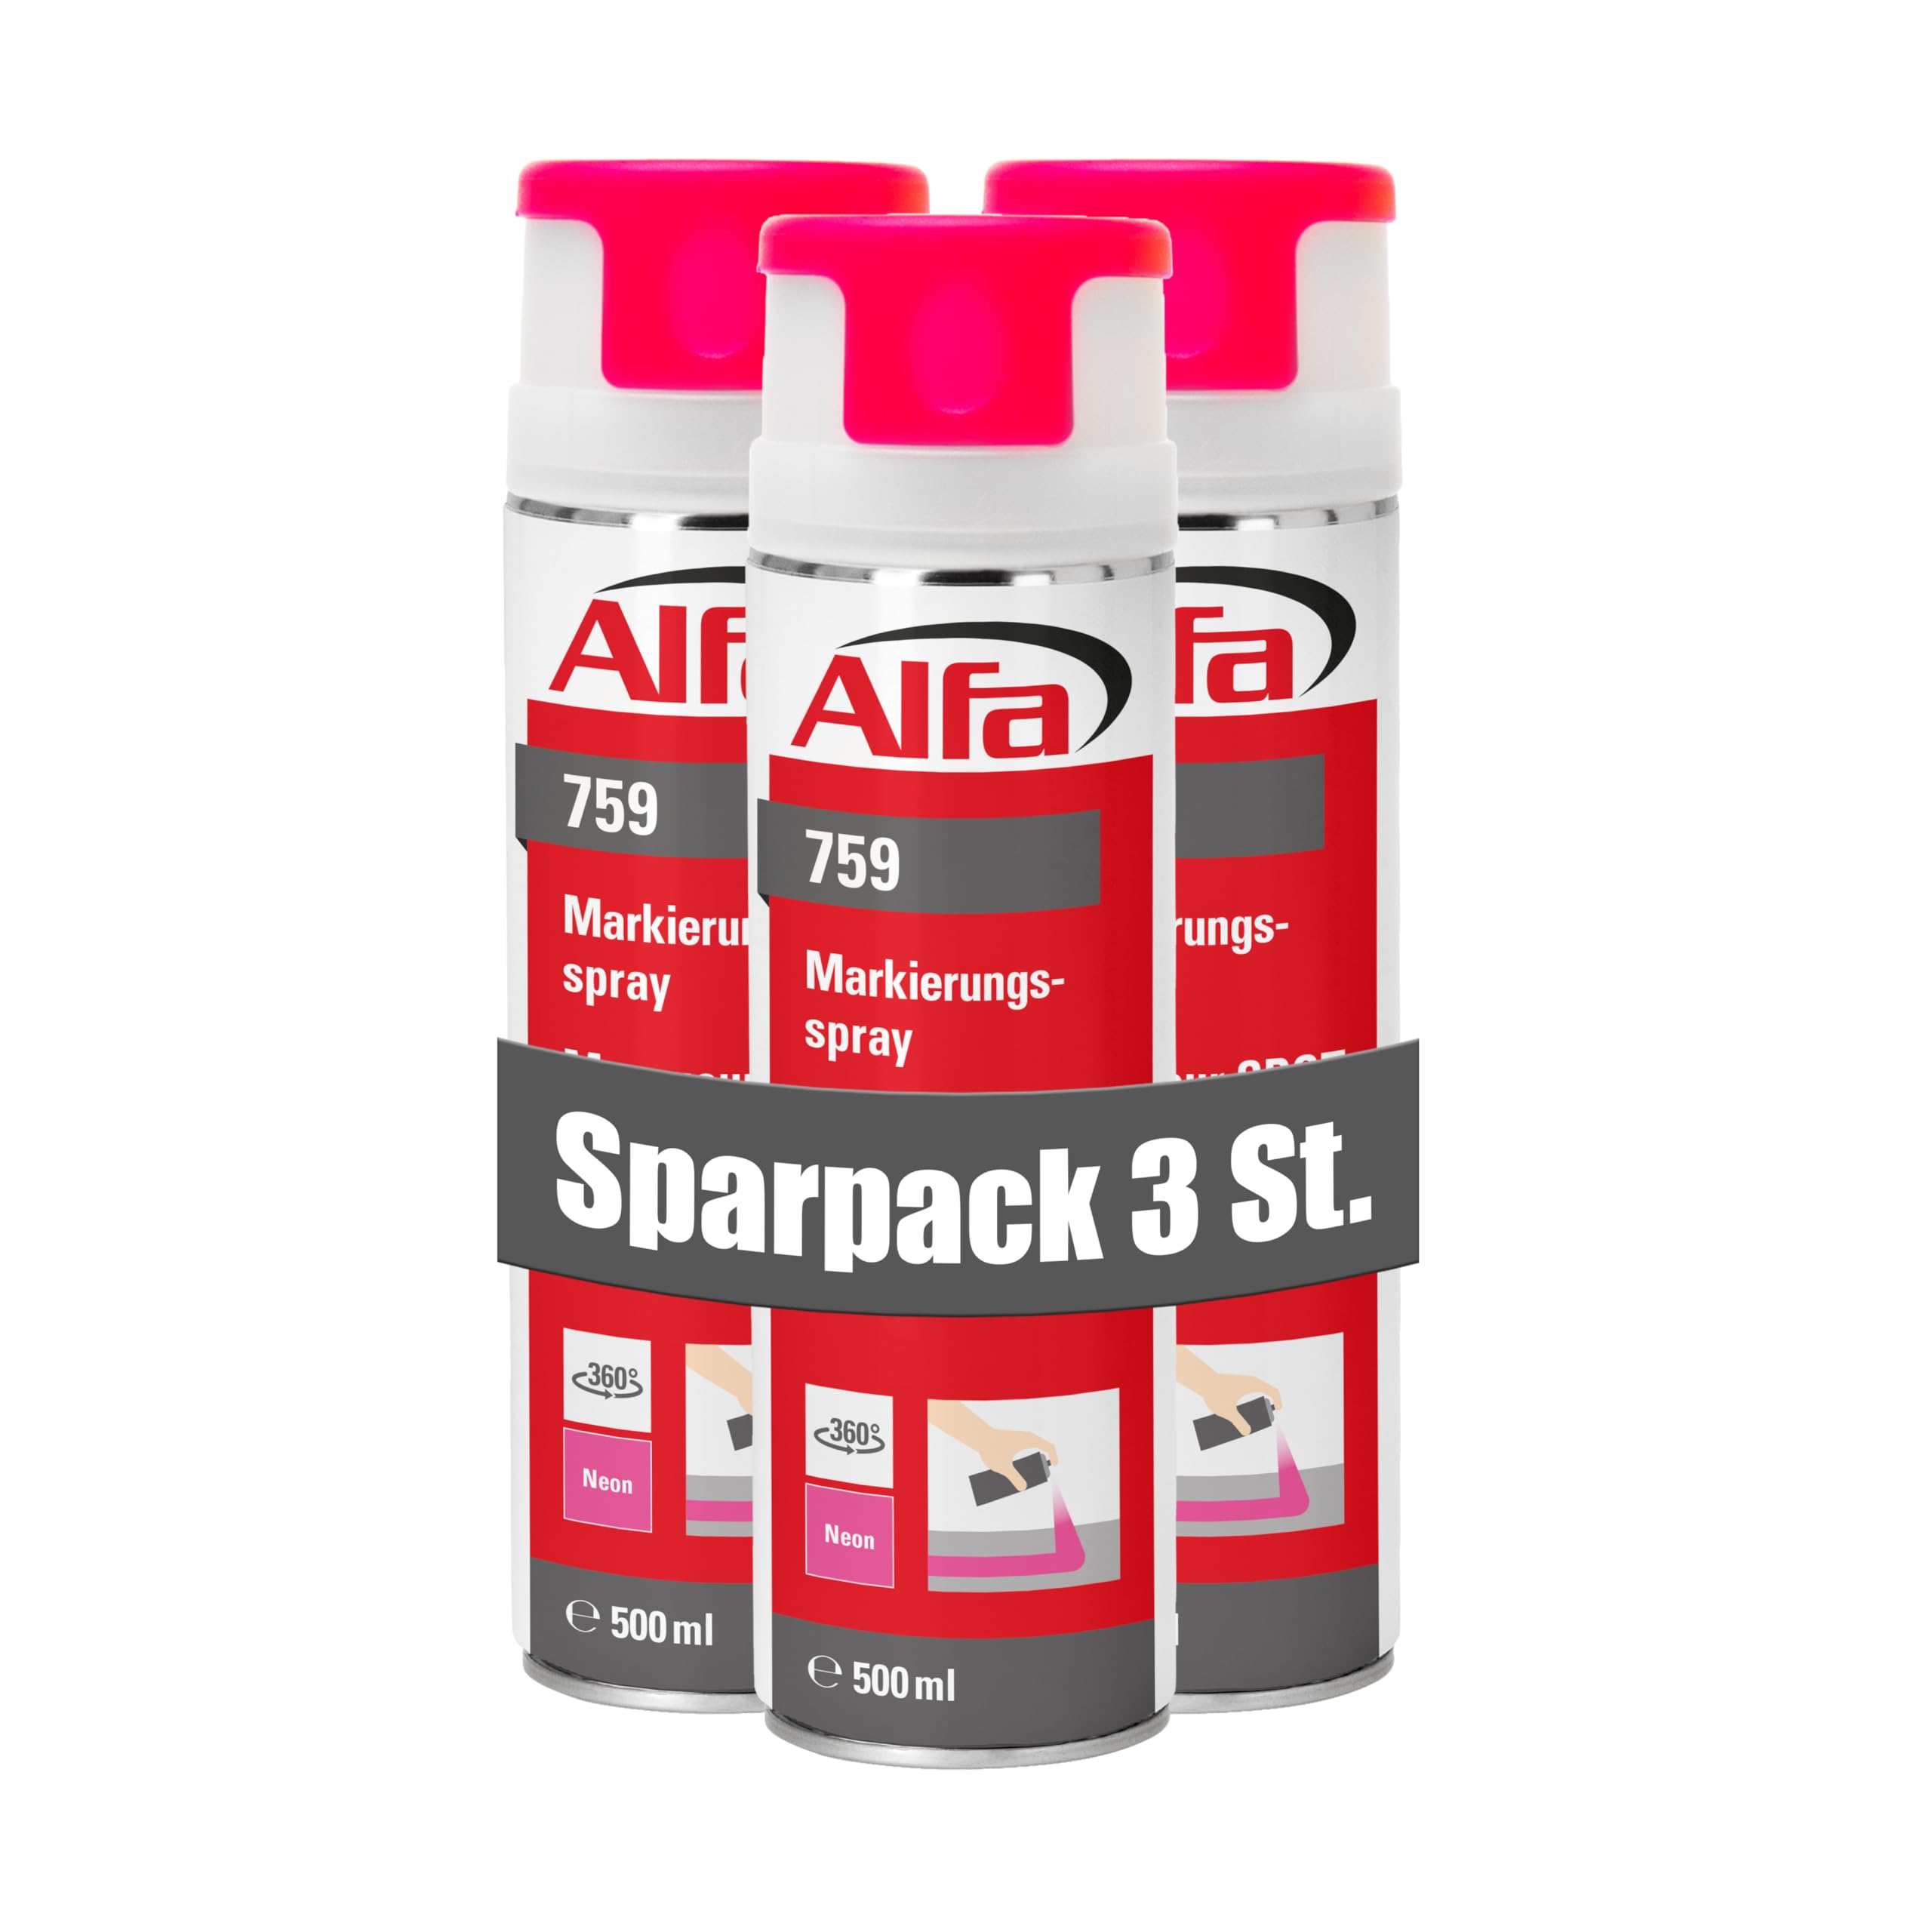 Alfa 3x Markierungsspray neon-pink 500 ml Profi-Qualität für saubere und präzise Markierungen mit flexibler 360° Sprühanwendung (Überkopffunktion)